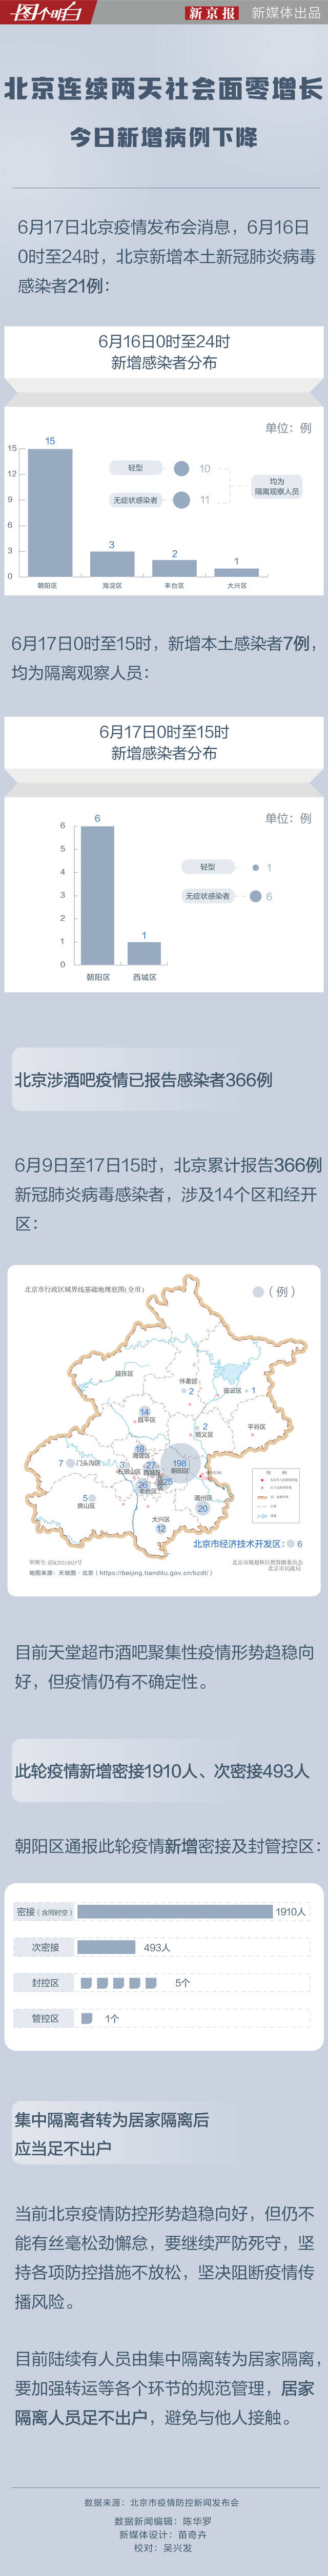 北京连续两天社会面零增长 今日新增病例下降